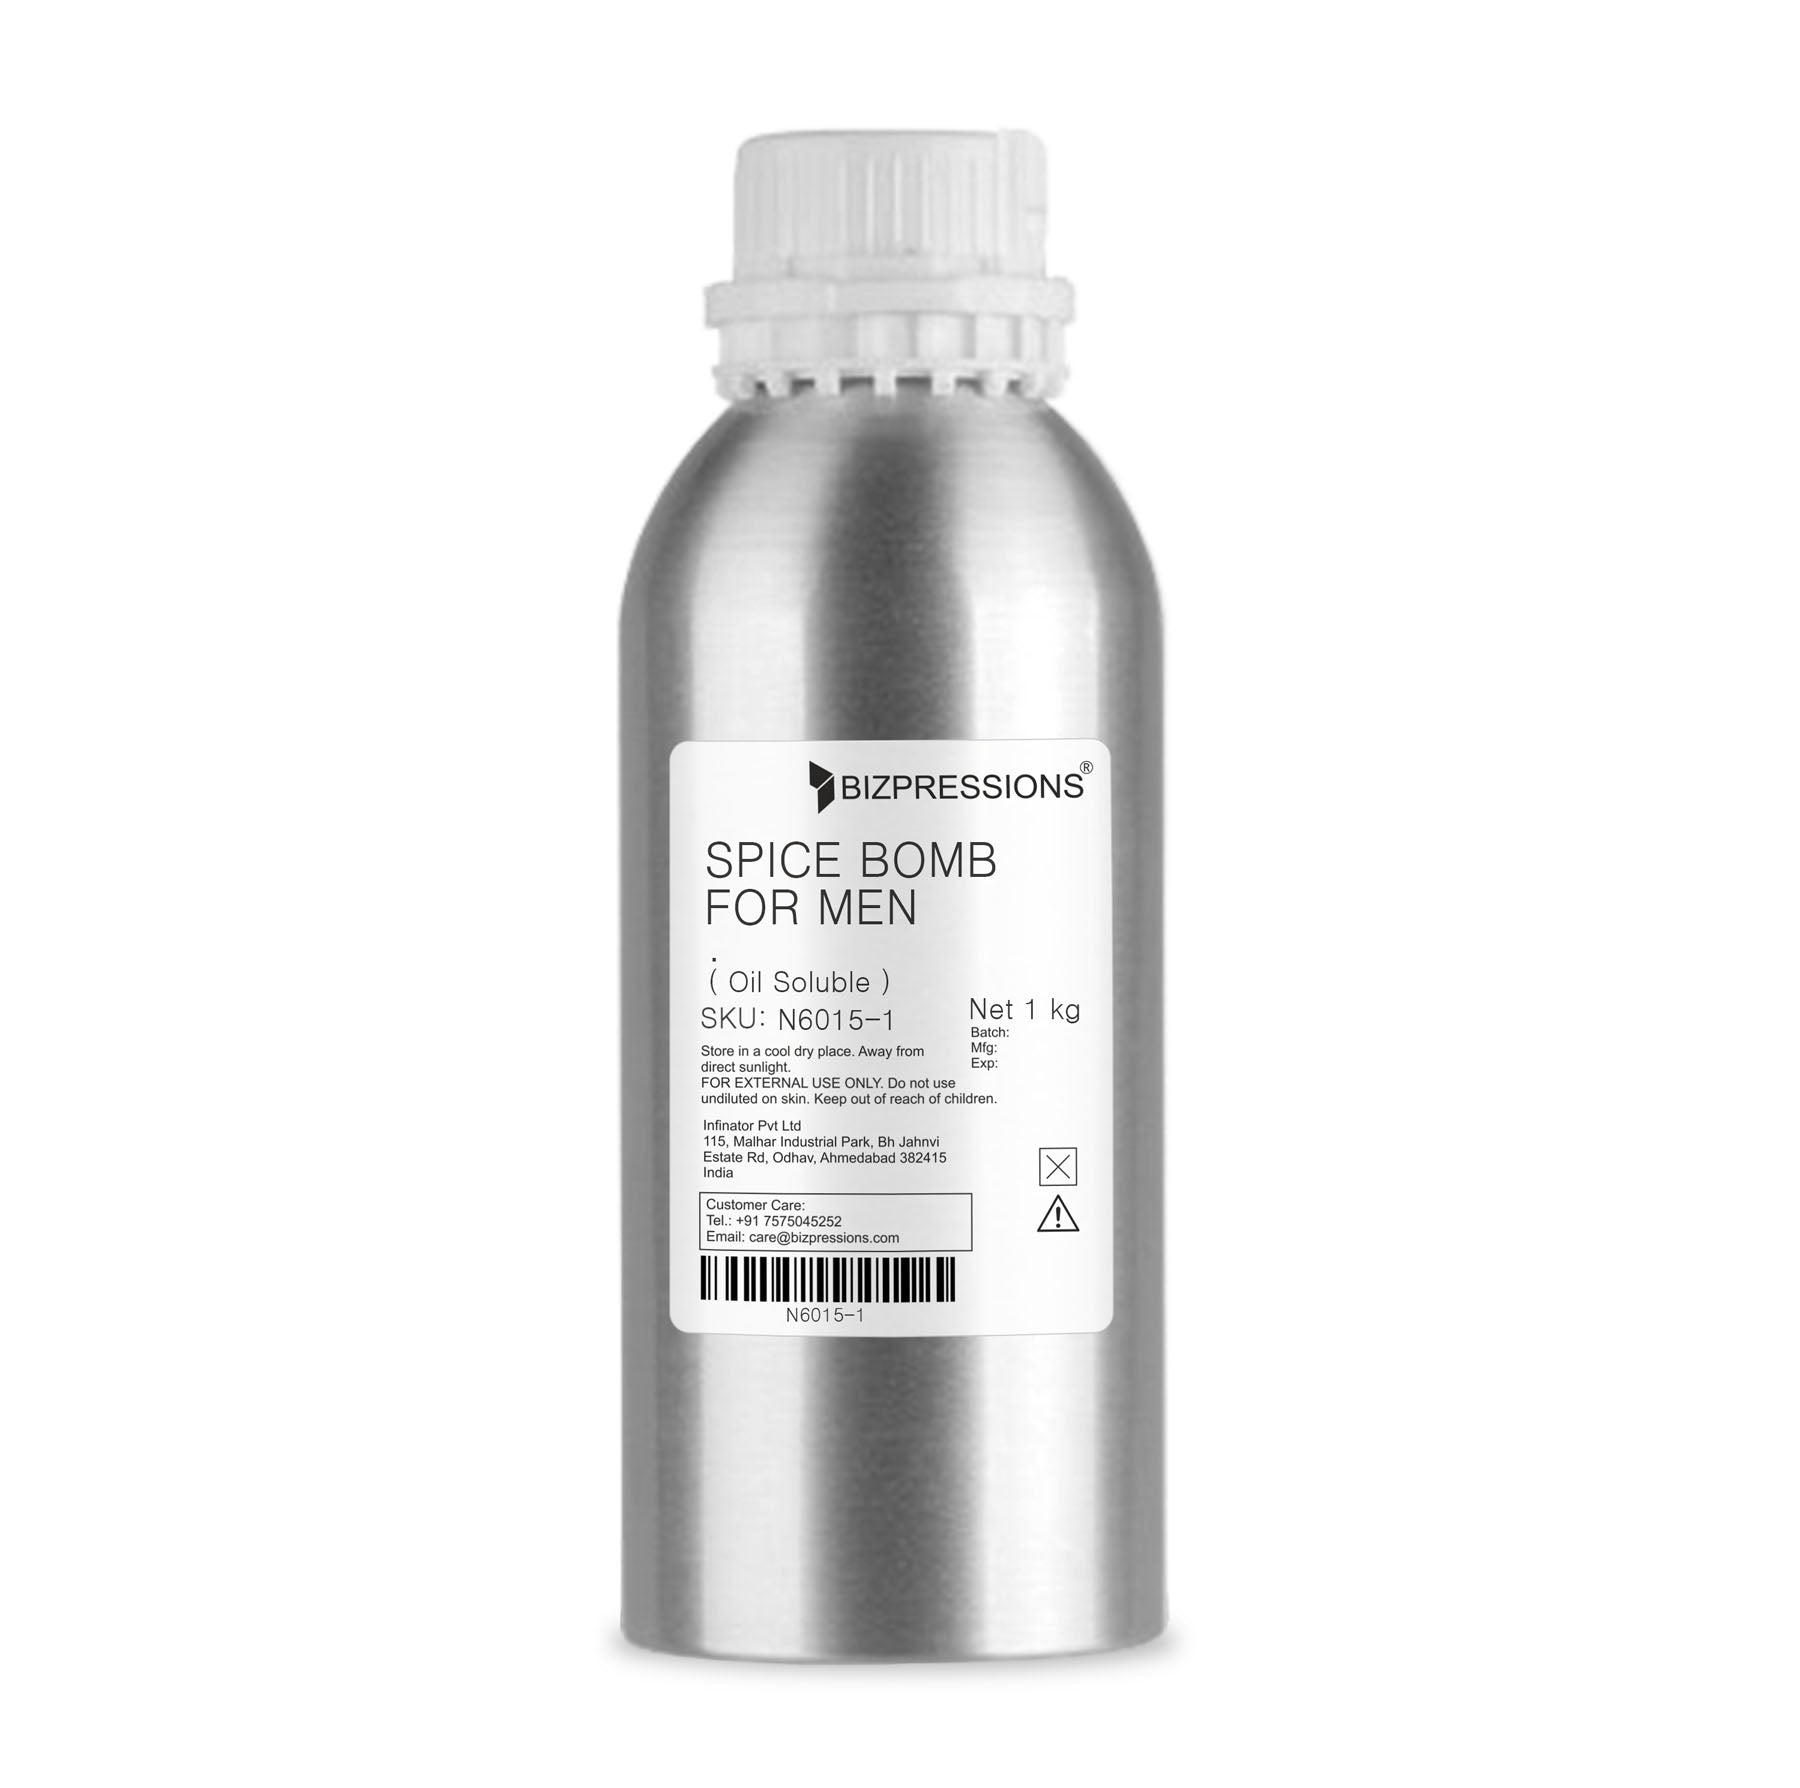 SPICE BOMB FOR MEN - Fragrance ( Oil Soluble ) - 1 kg